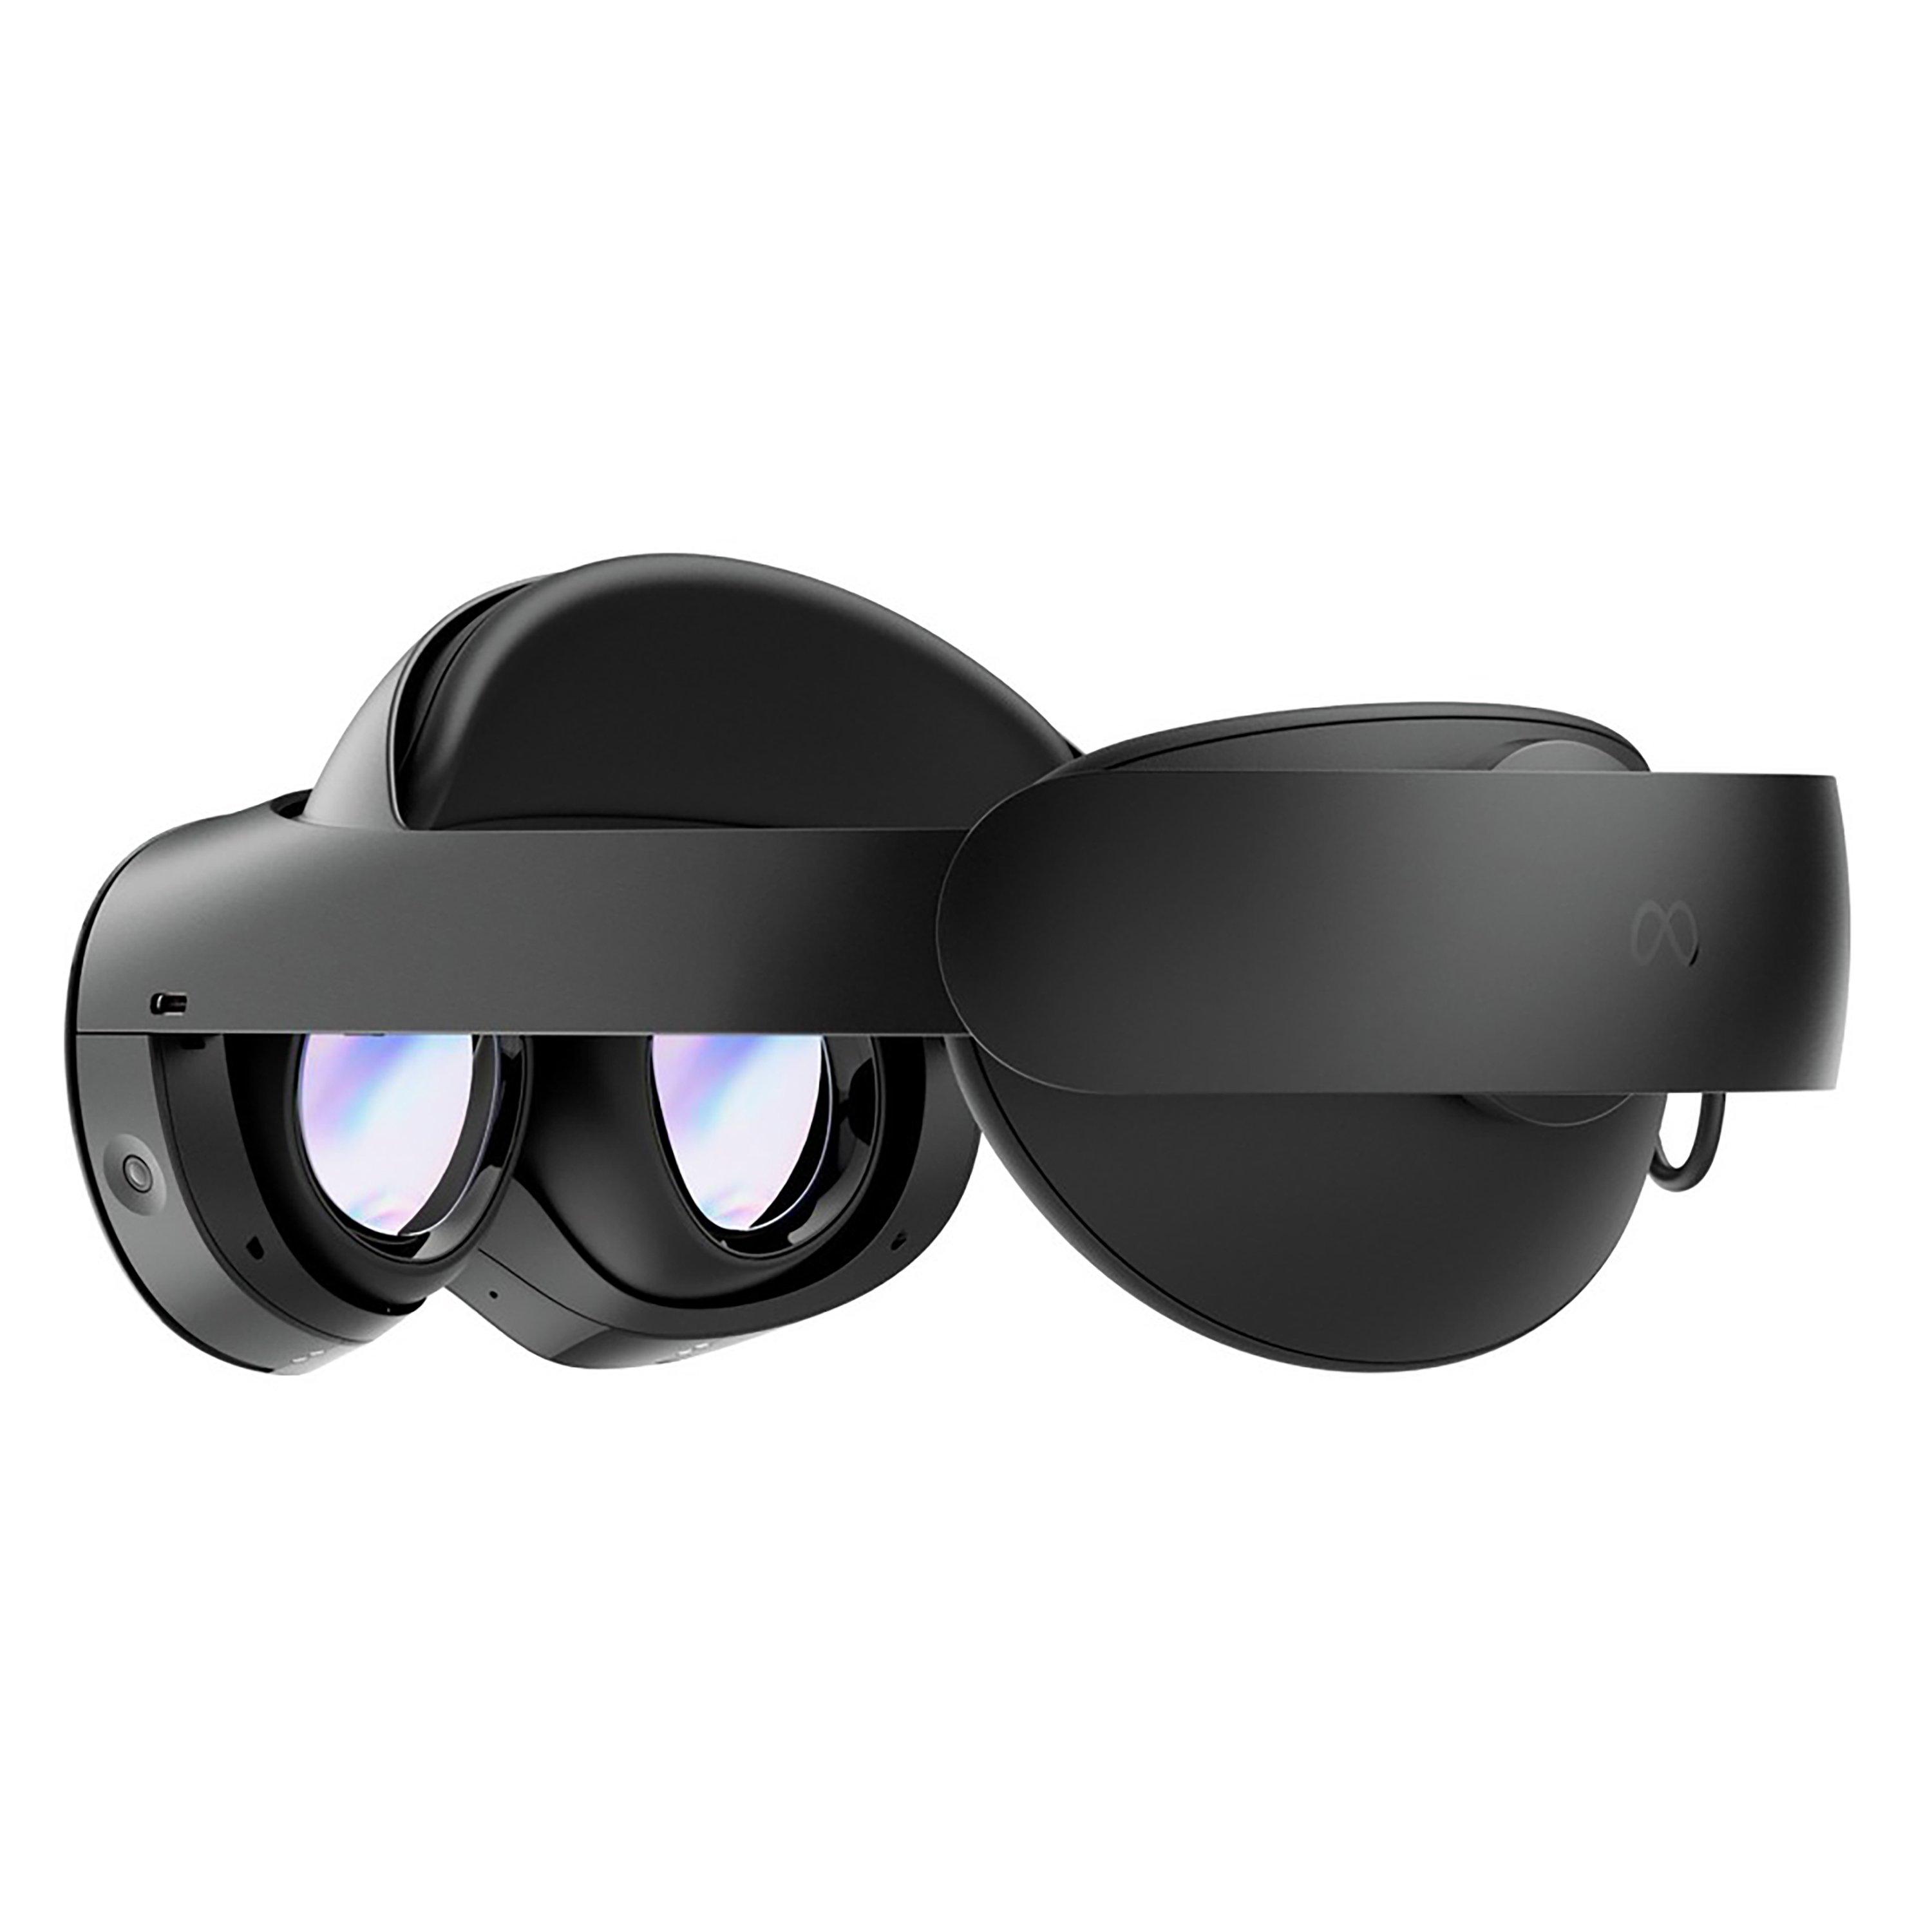 Meta Quest Pro VR Headset | GameStop